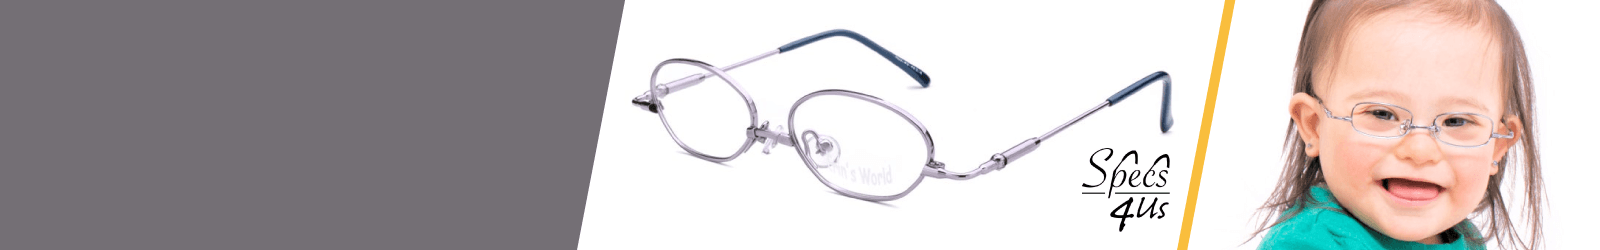 White Specs4us Eyeglass Lenses